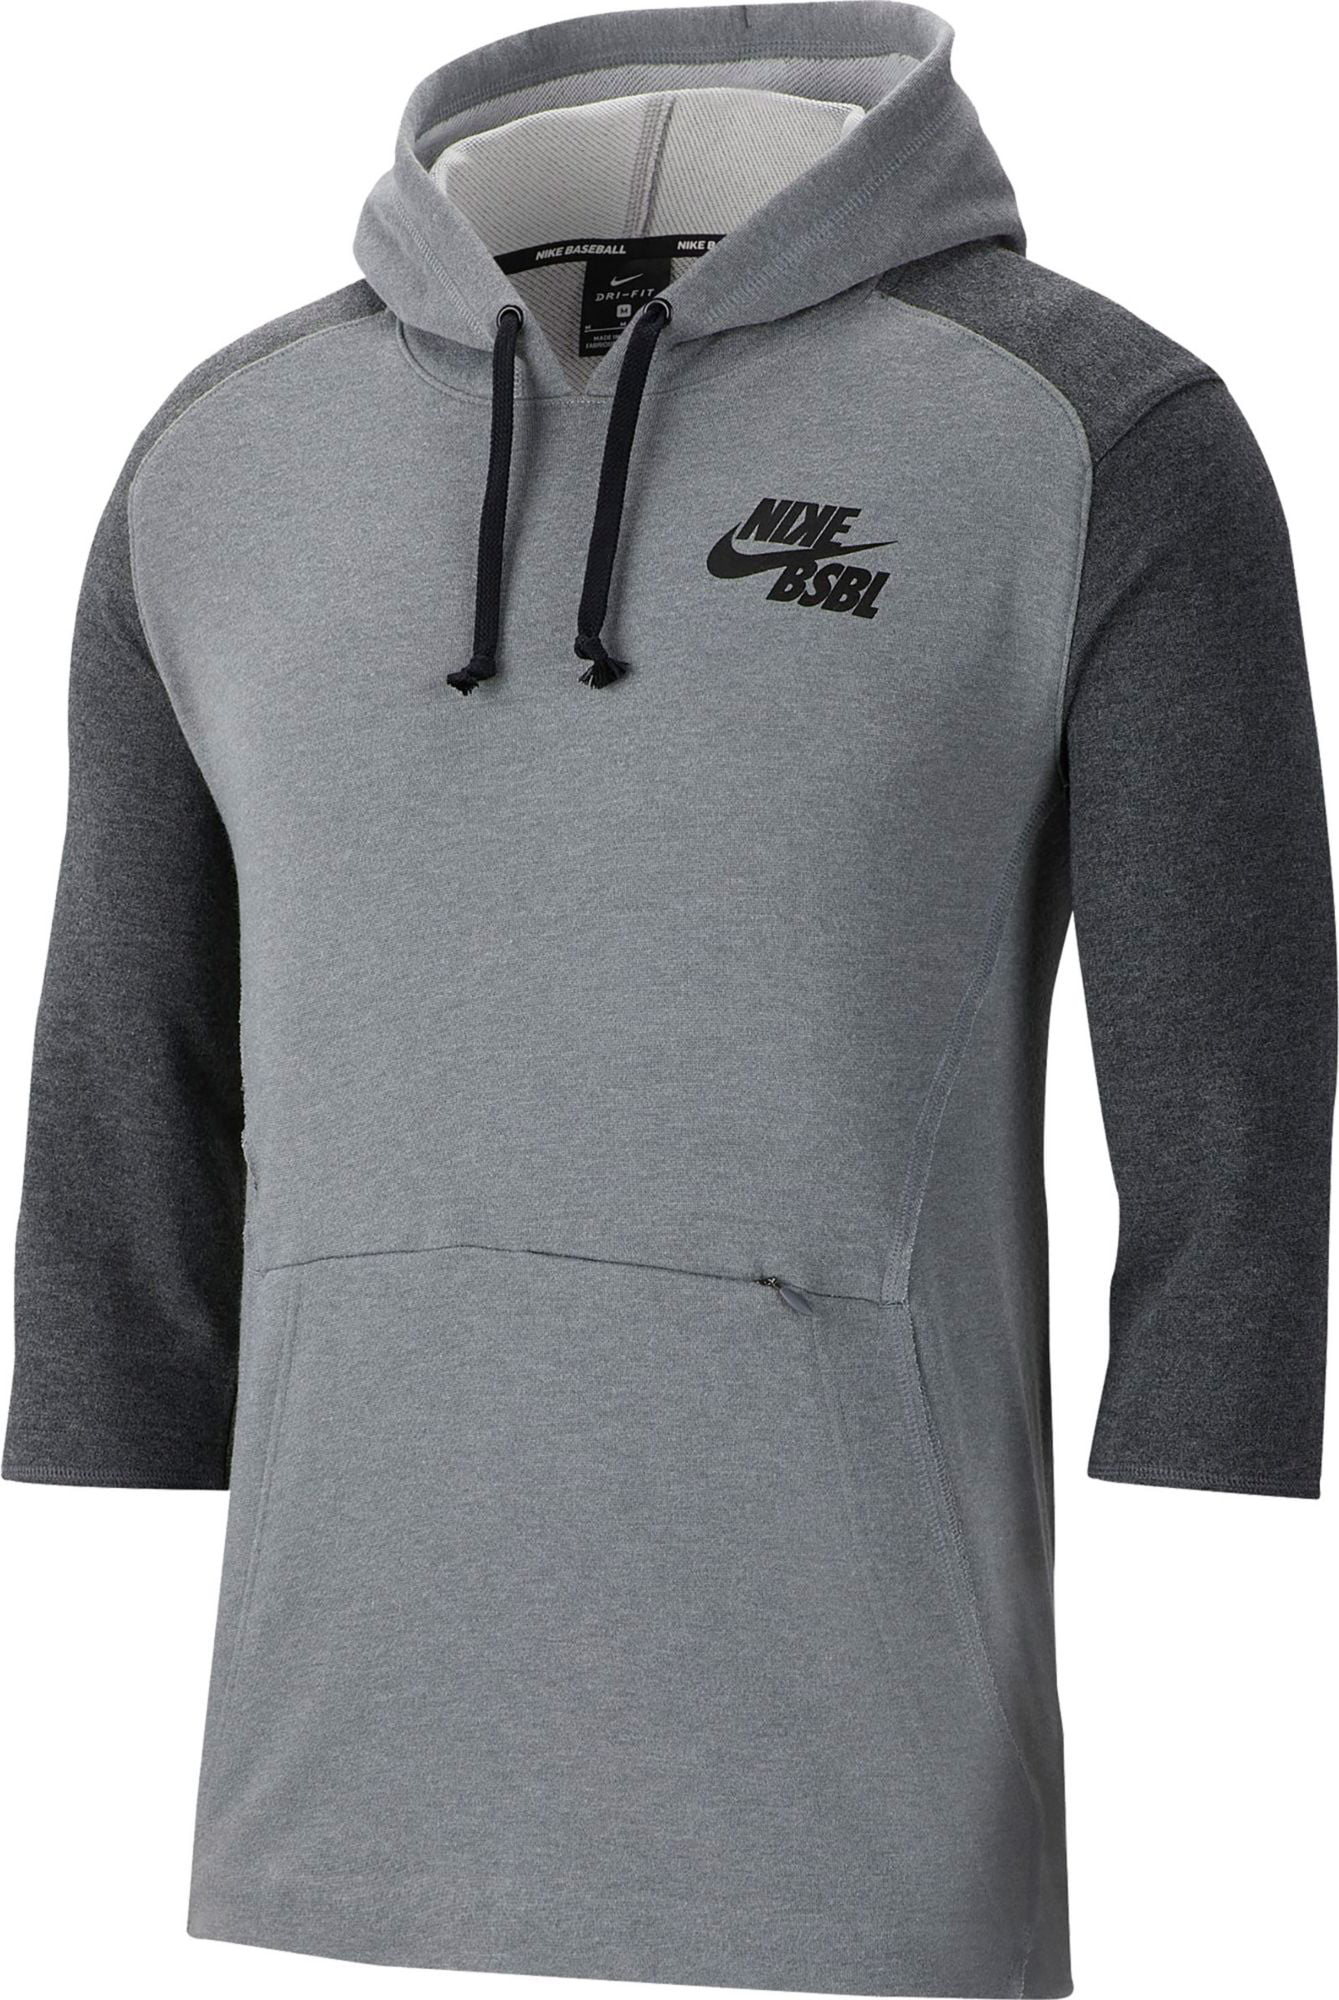 Nike Men's 3/4 Sleeve Pullover Baseball Hoodie, Chcl Hthr/Dk Gry Hthr ...